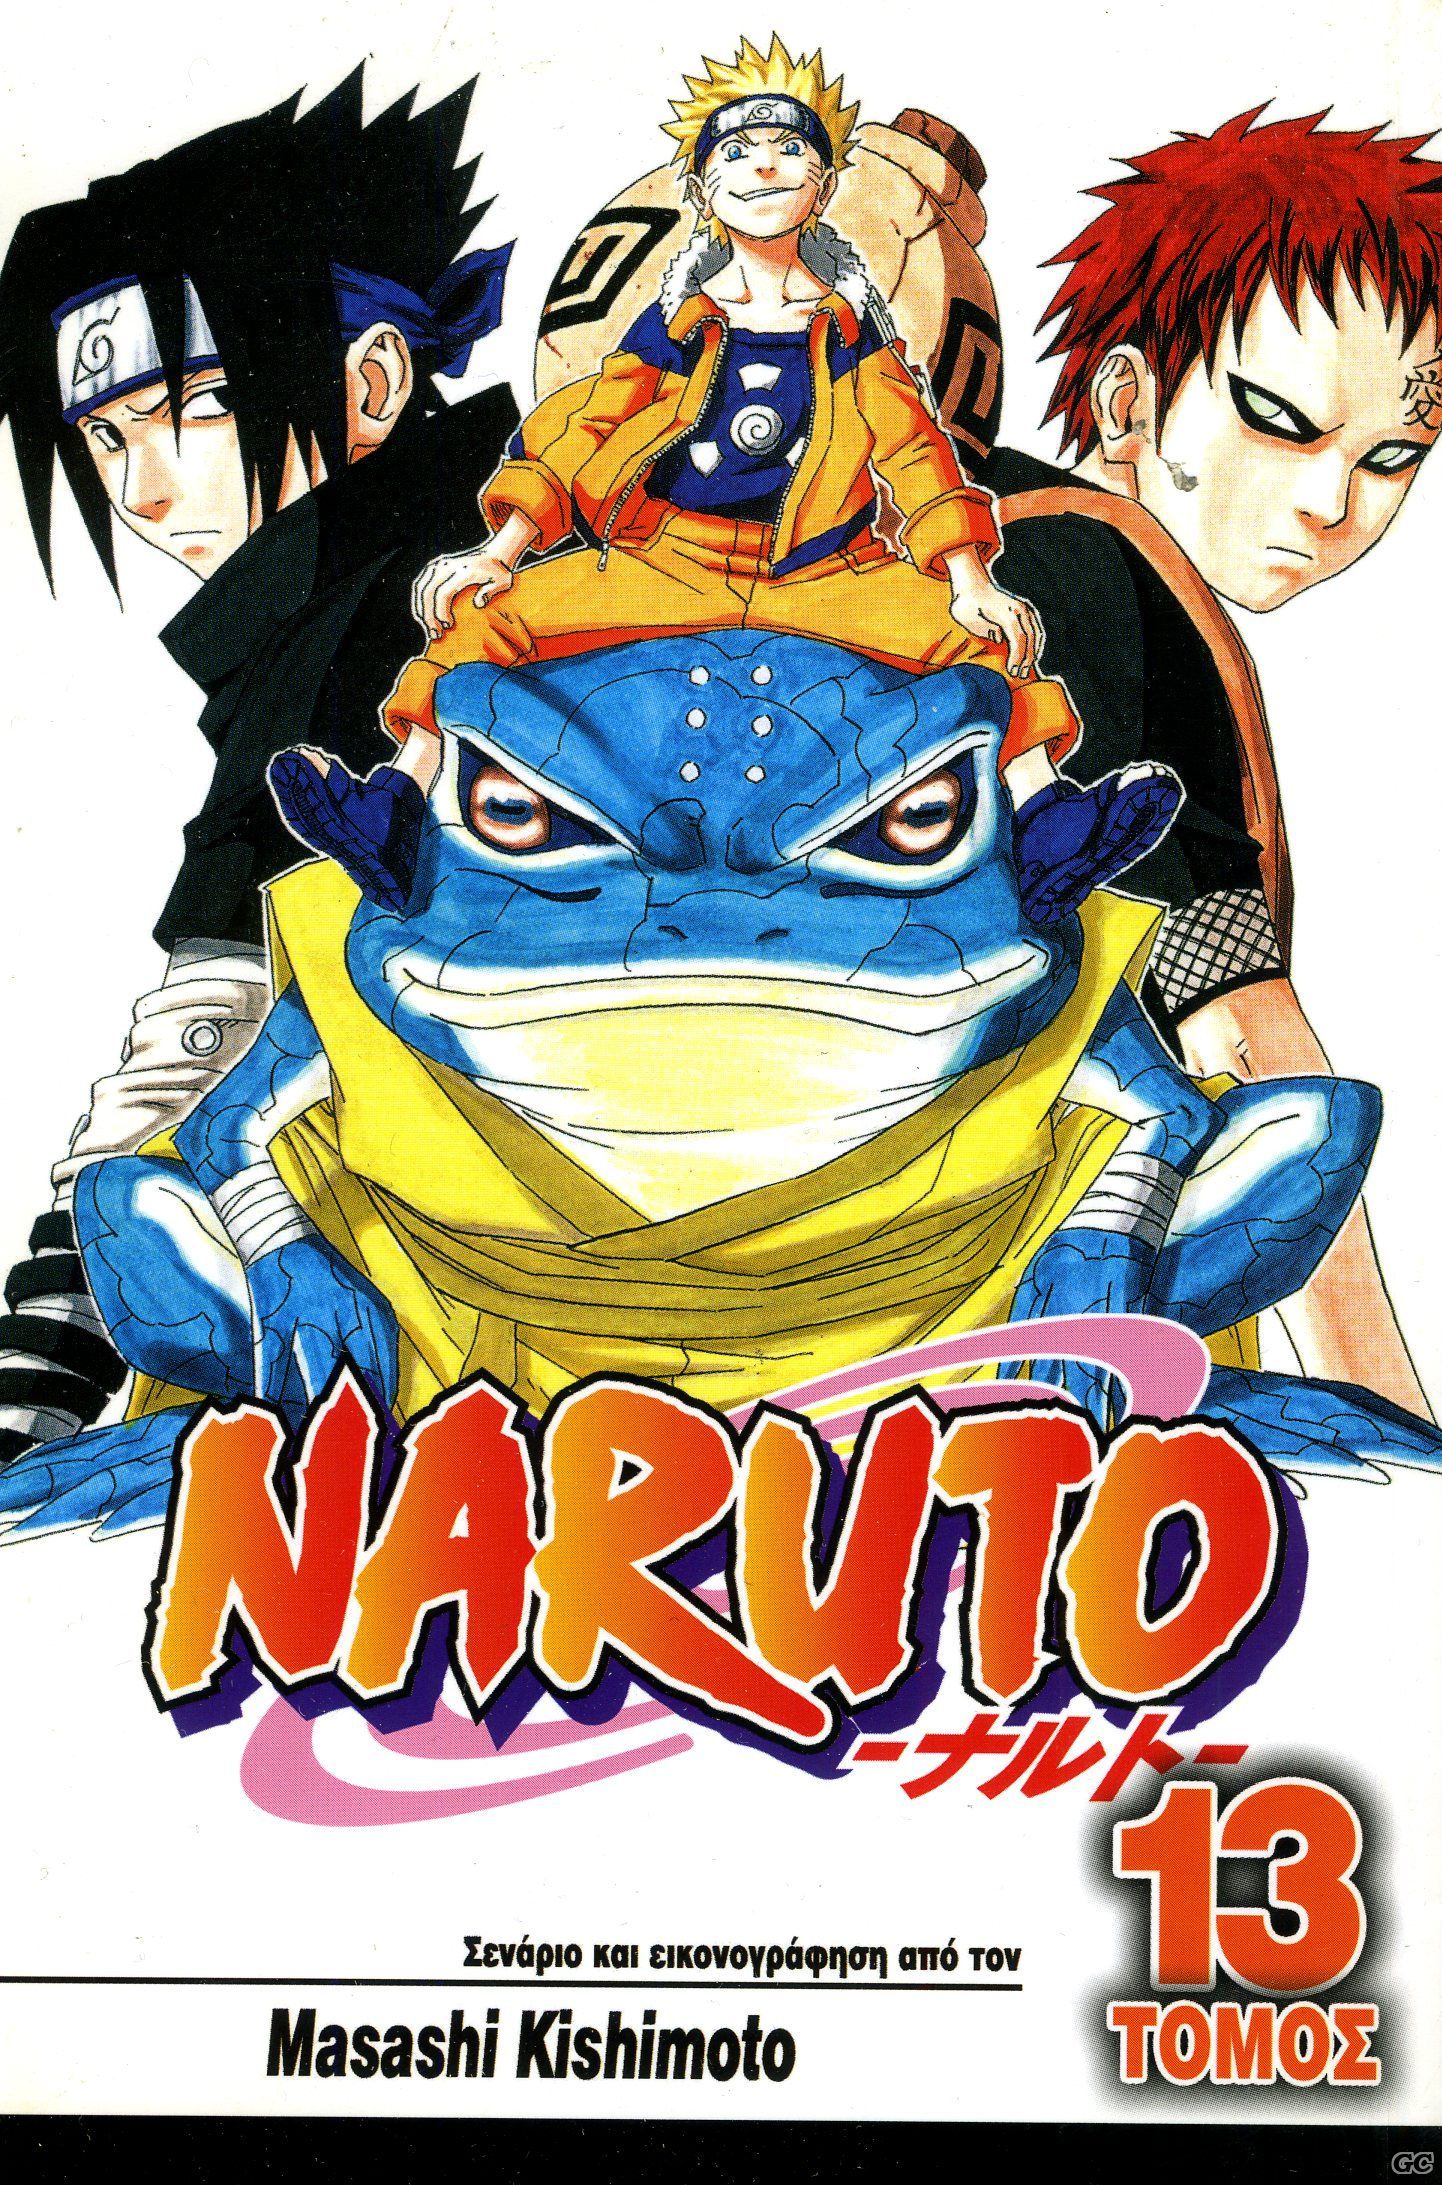 Naruto_0013.jpg